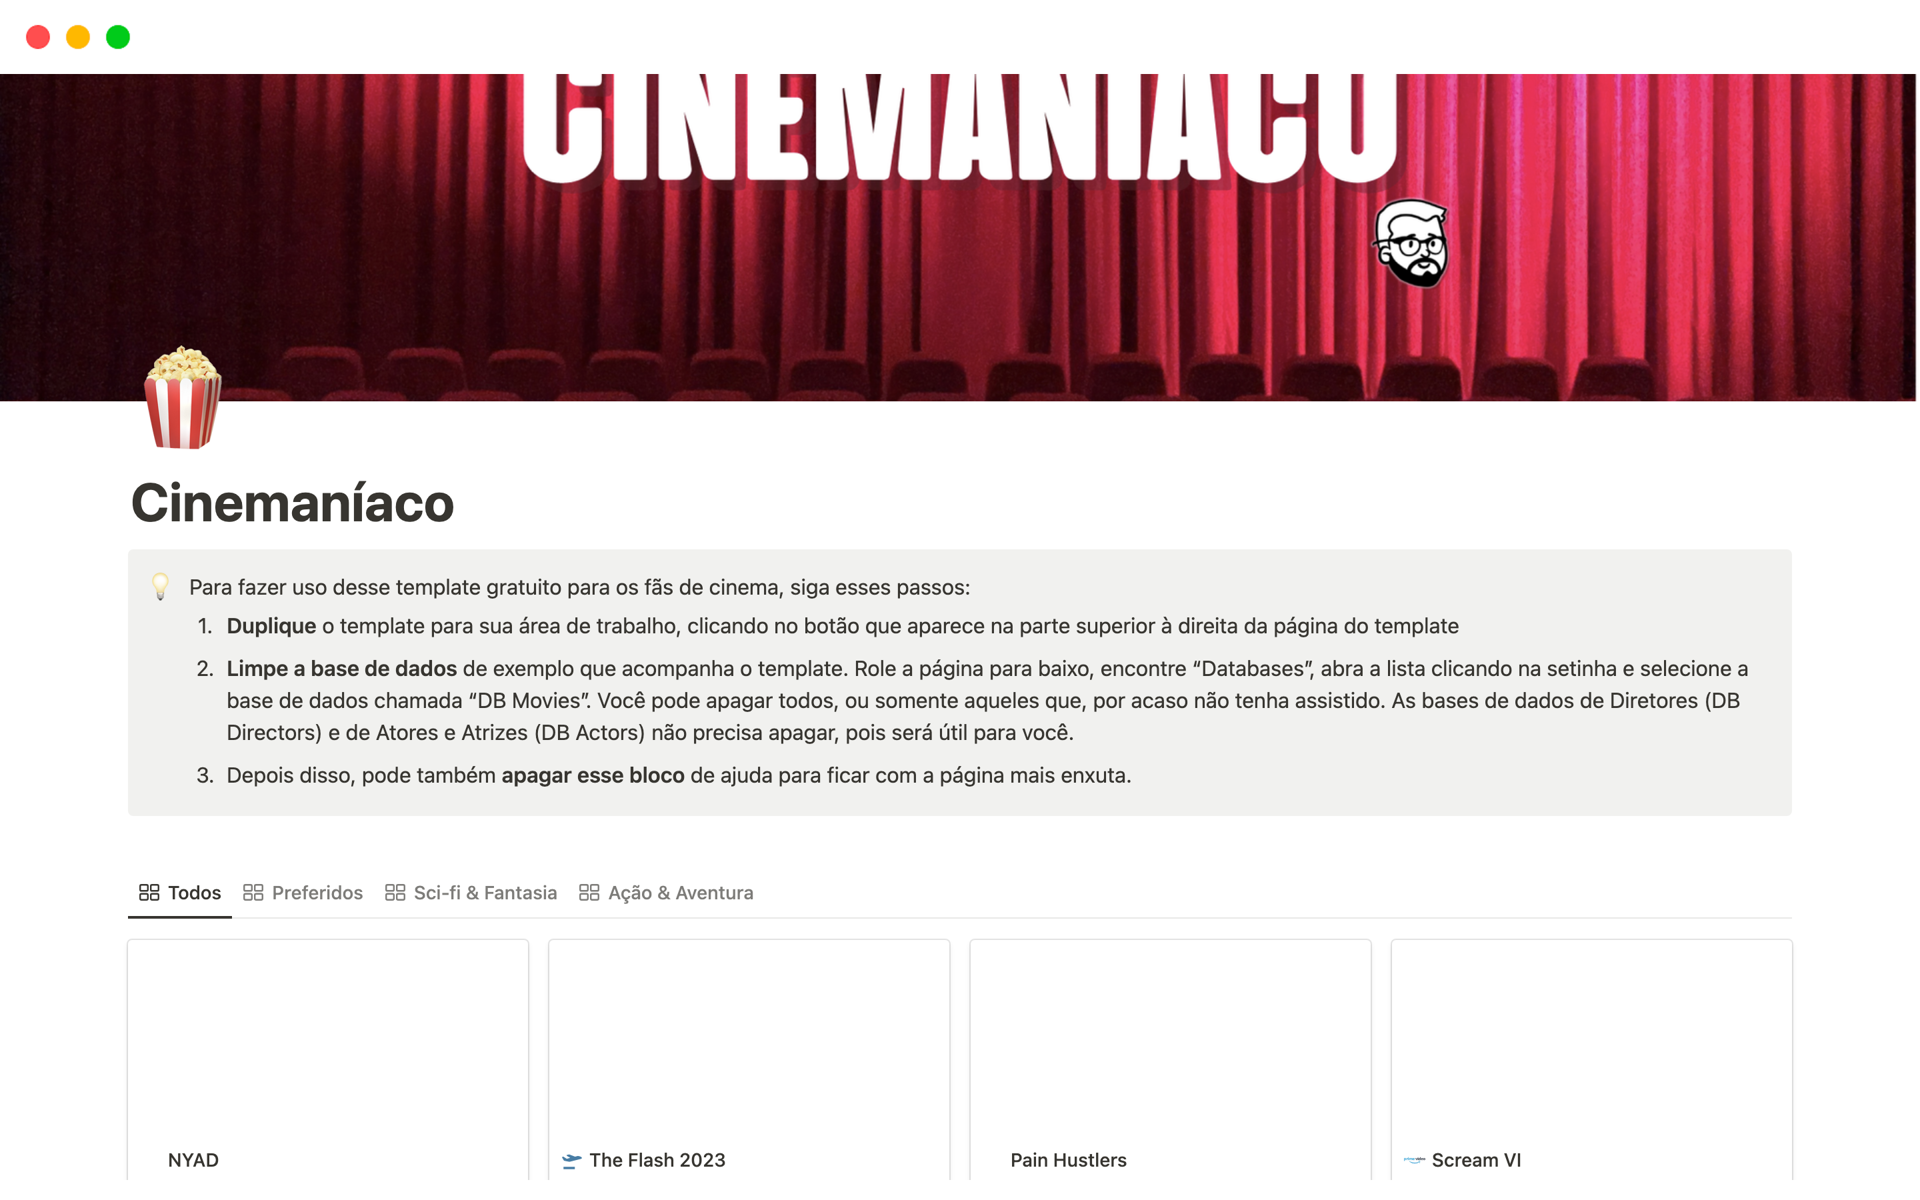 Eine Vorlagenvorschau für Cinemaníaco